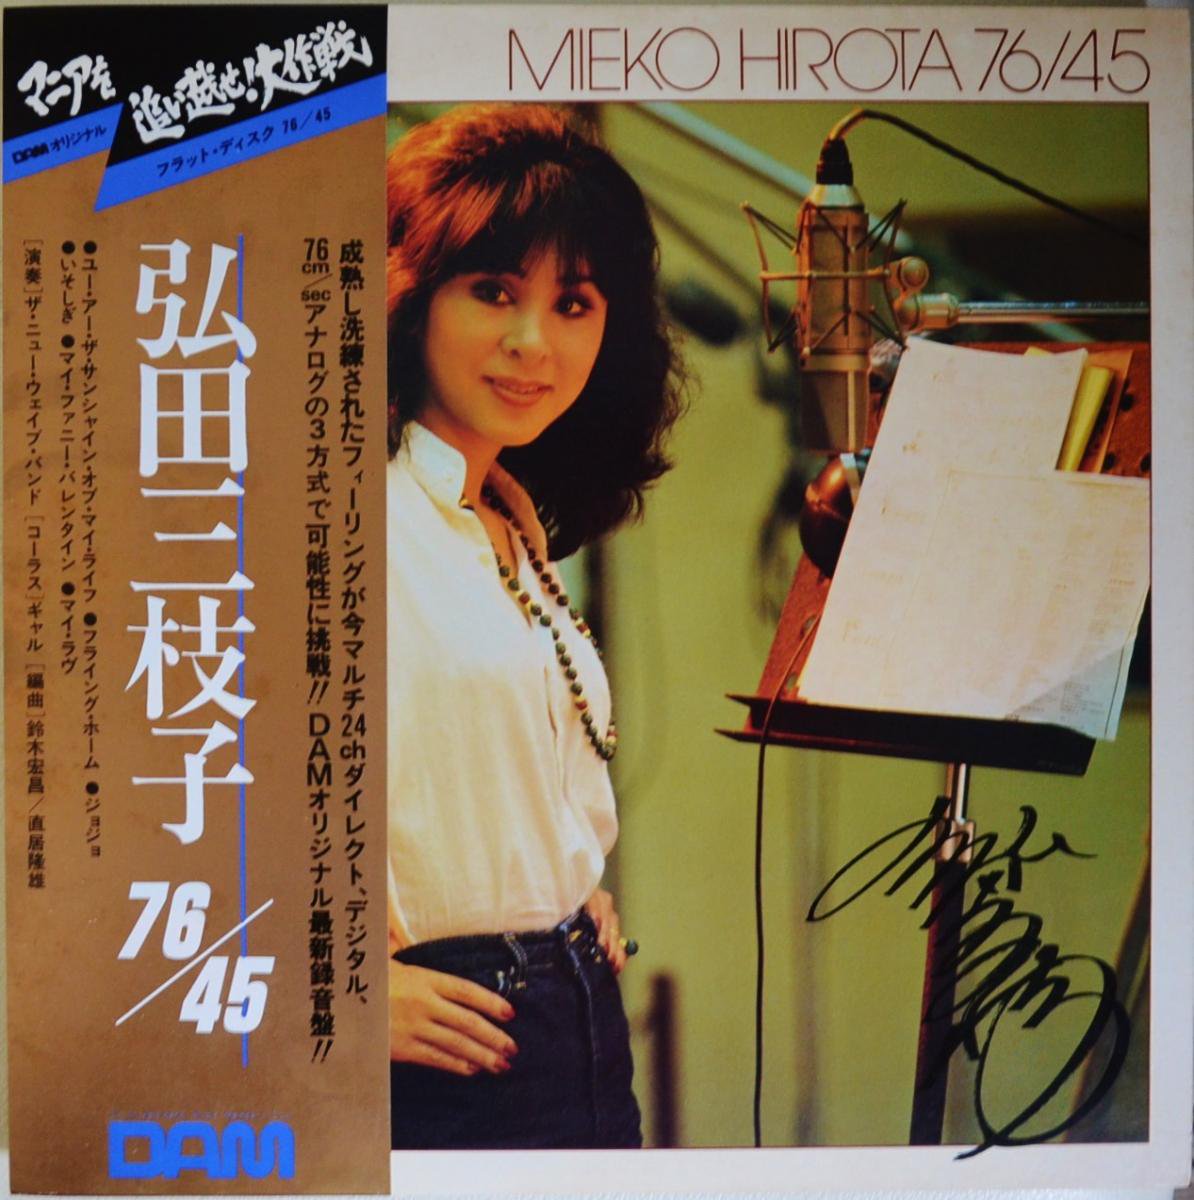 弘田三枝子 MIEKO HIROTA / 76/45 (LP) - HIP TANK RECORDS